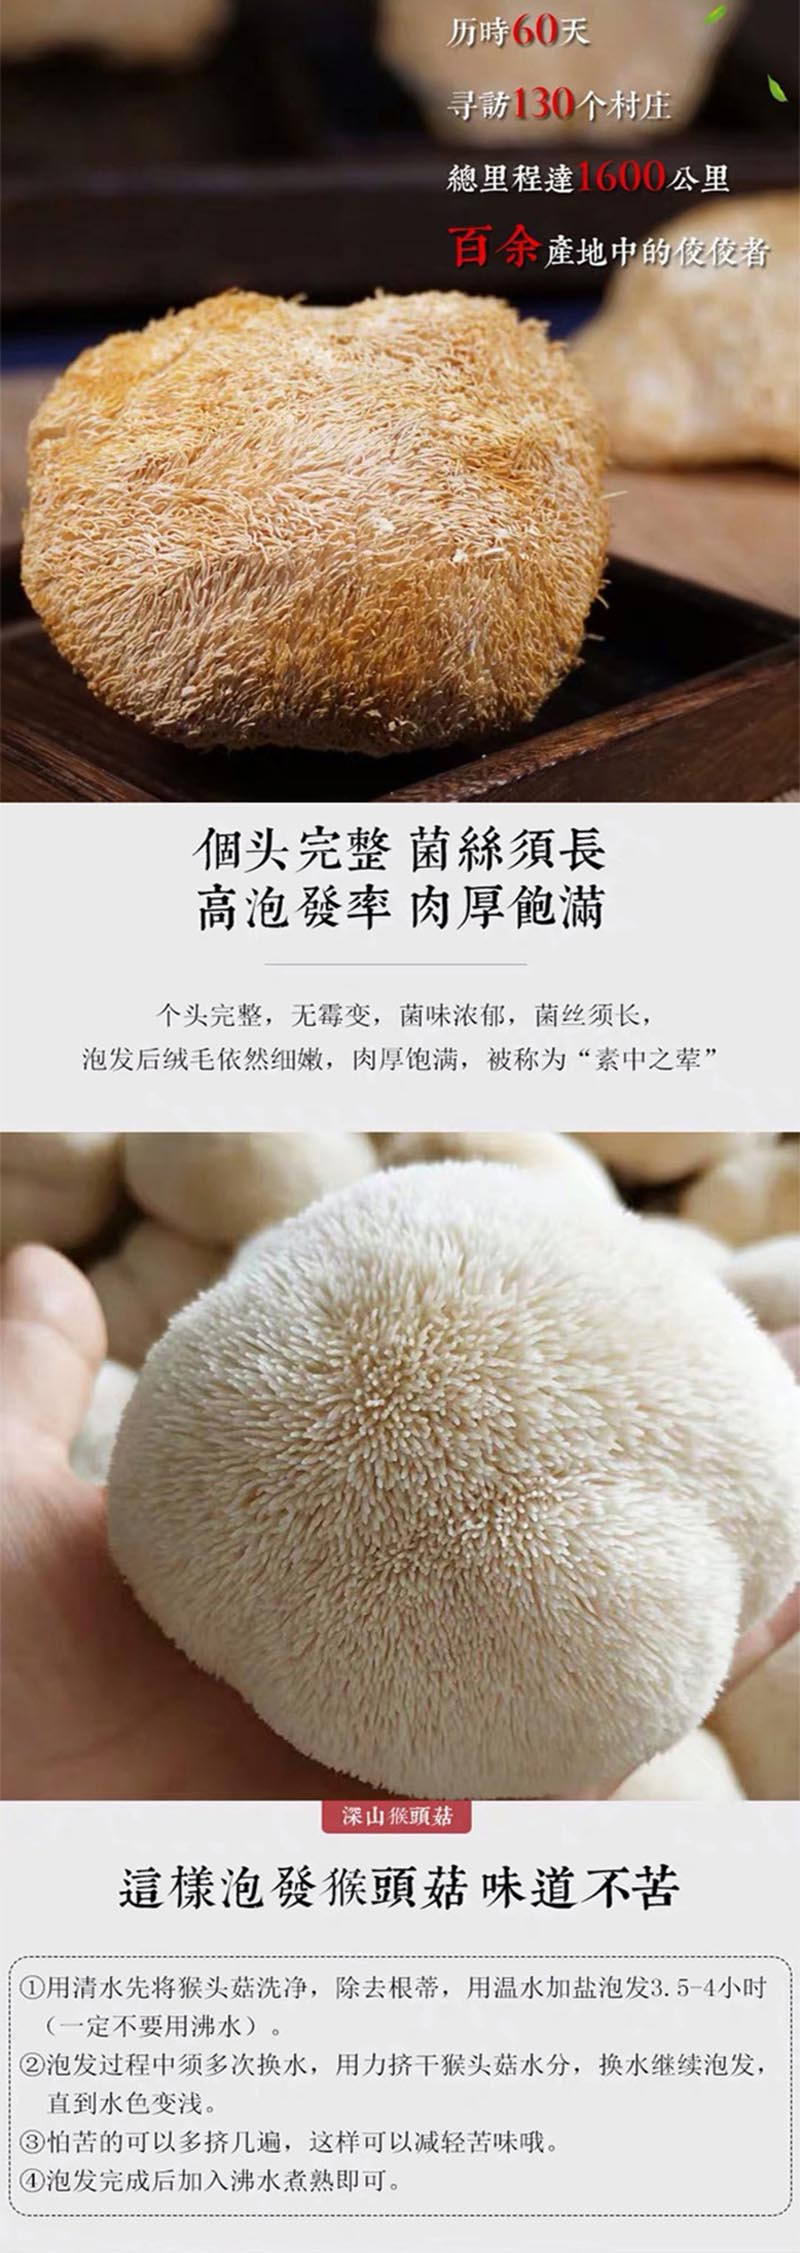  洛阳农品 手绘小镇 猴头菇250g嵩县农家特家原生态有机菌菇山珍干货